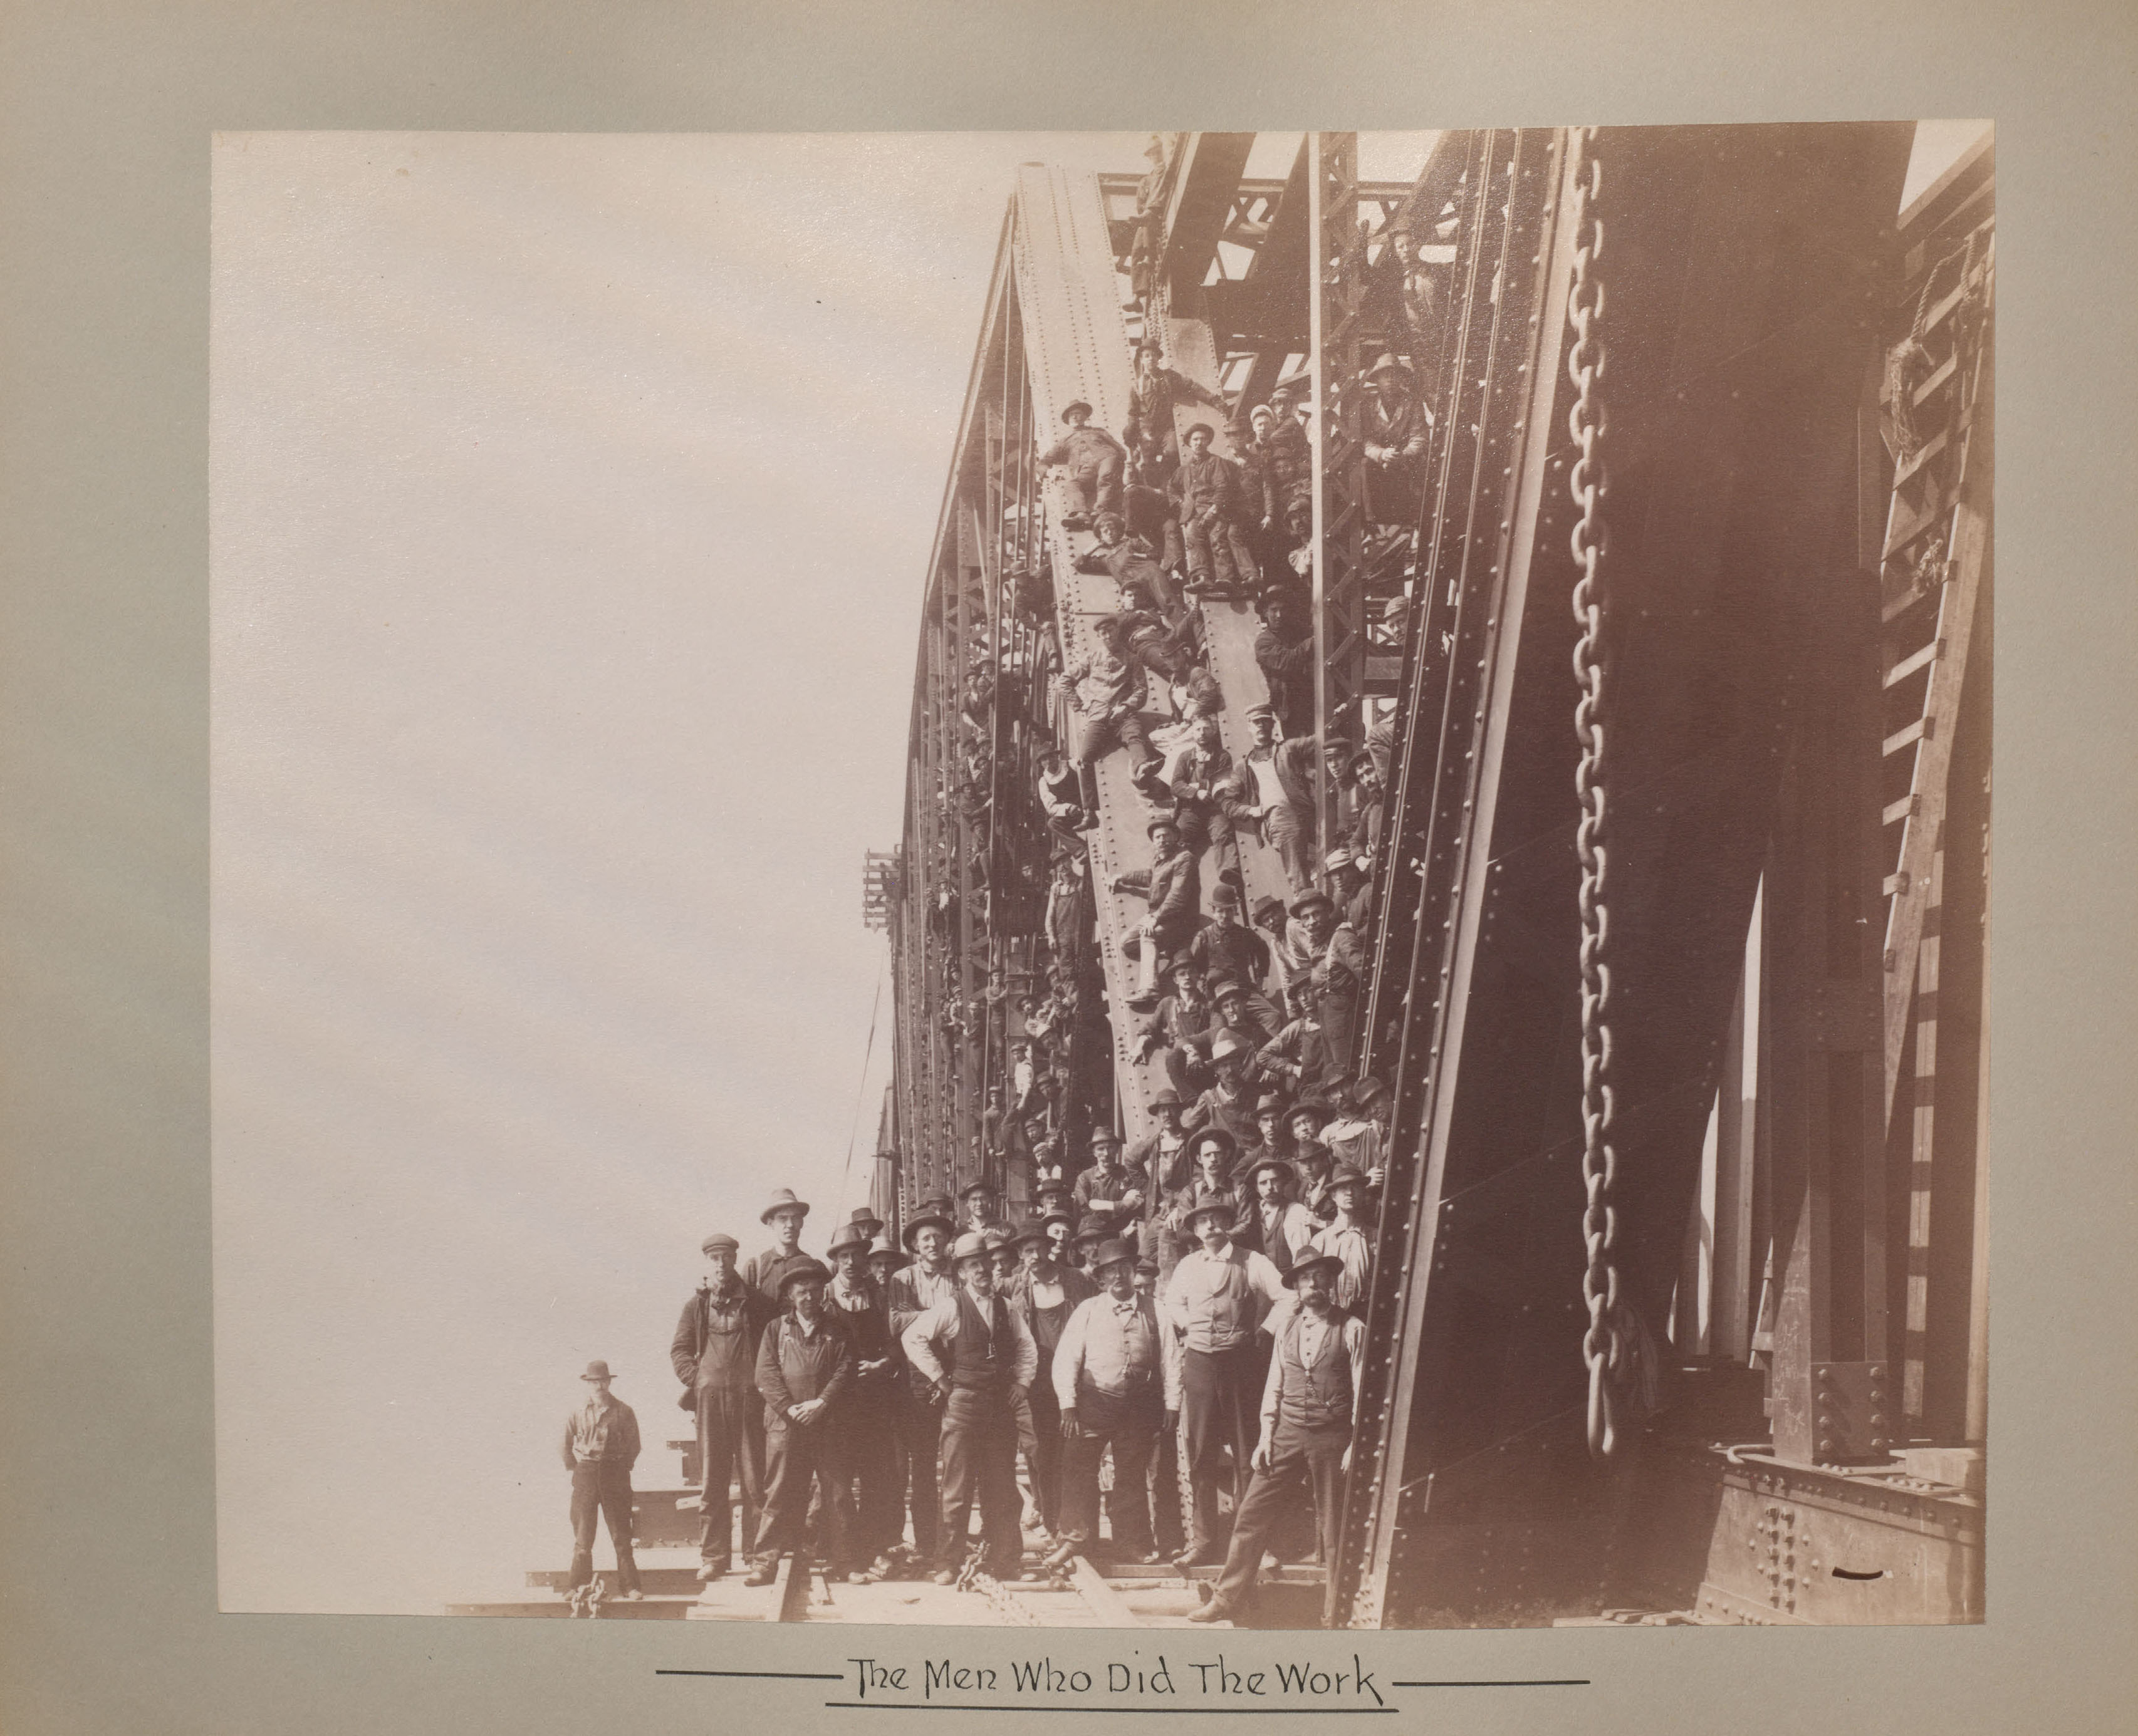 Les hommes qui ont travaillé à la construction du pont posent devant et sur la structure métallique du pont.